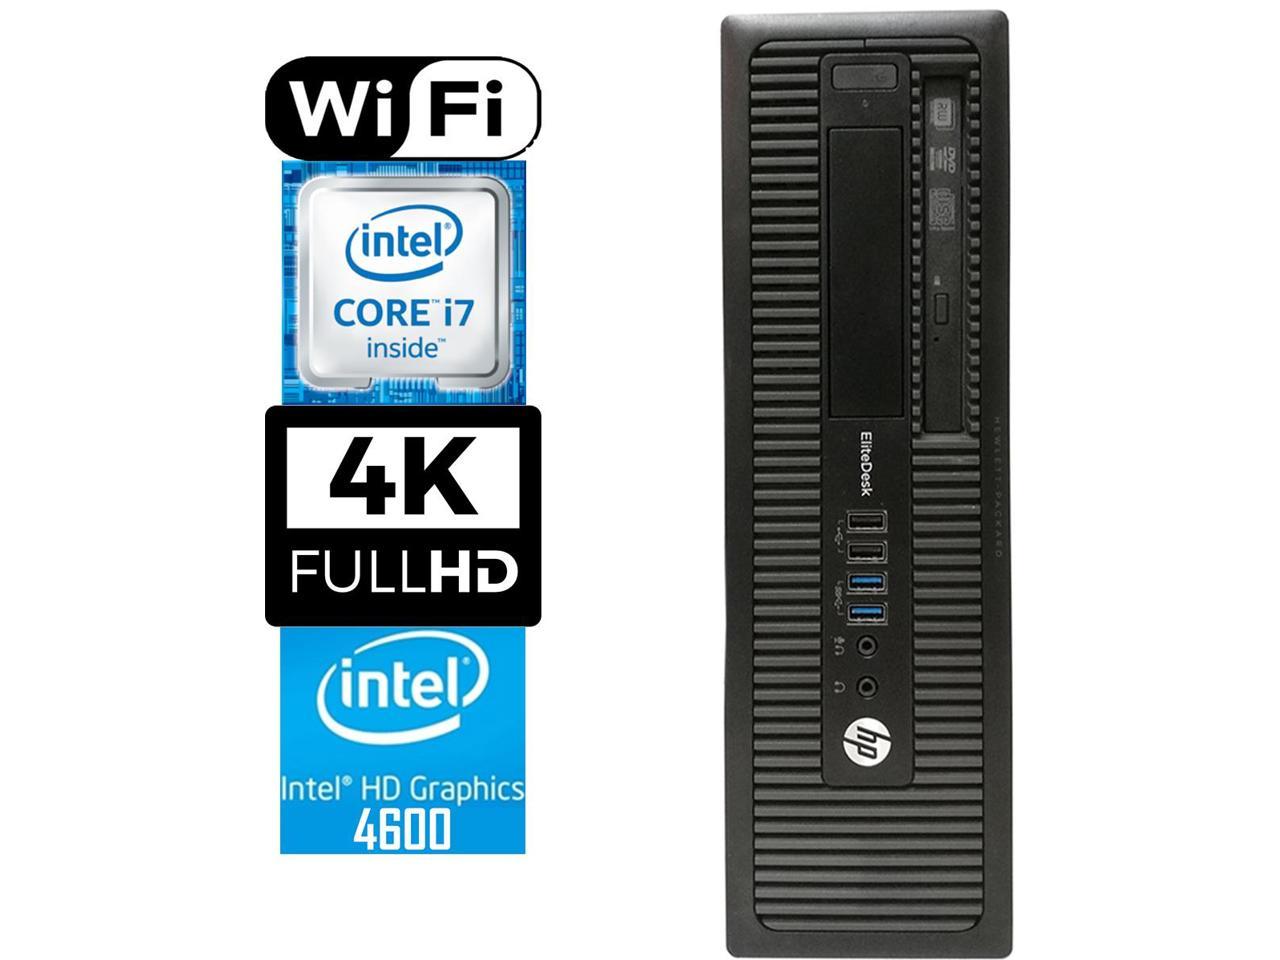 HP 800 G1 SFF Desktop Workstation, Quad-Core i7 4770 3.4, 16GB RAM, 512GB SSD, Intel HD Graphics 4600 4K 3-Monitor Support, USB 3, WiFi, Windows 10 Pro, Bluetooth, HDMI